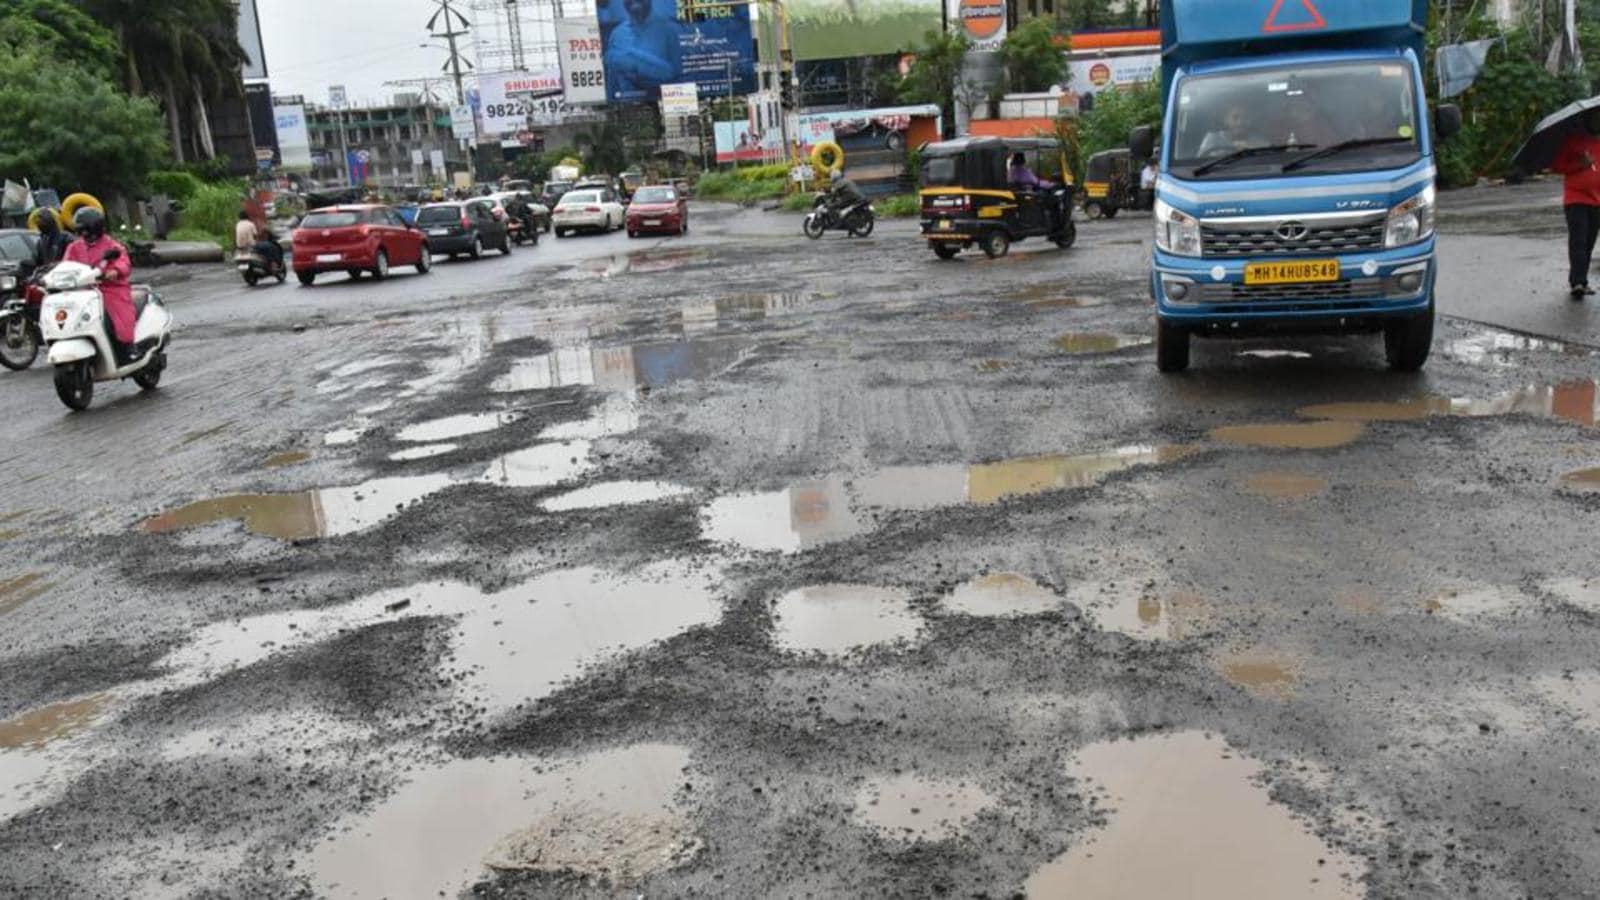 Potholes | PMC Pune | महापालिकेच्या पथ विभागाच्या कामाचा दर्जा झाला उघड | पुन्हा झाली रस्त्यांची चाळण  | विभागप्रमुख म्हणतात काम सुरु आहे लवकरच रिपोर्ट देऊ